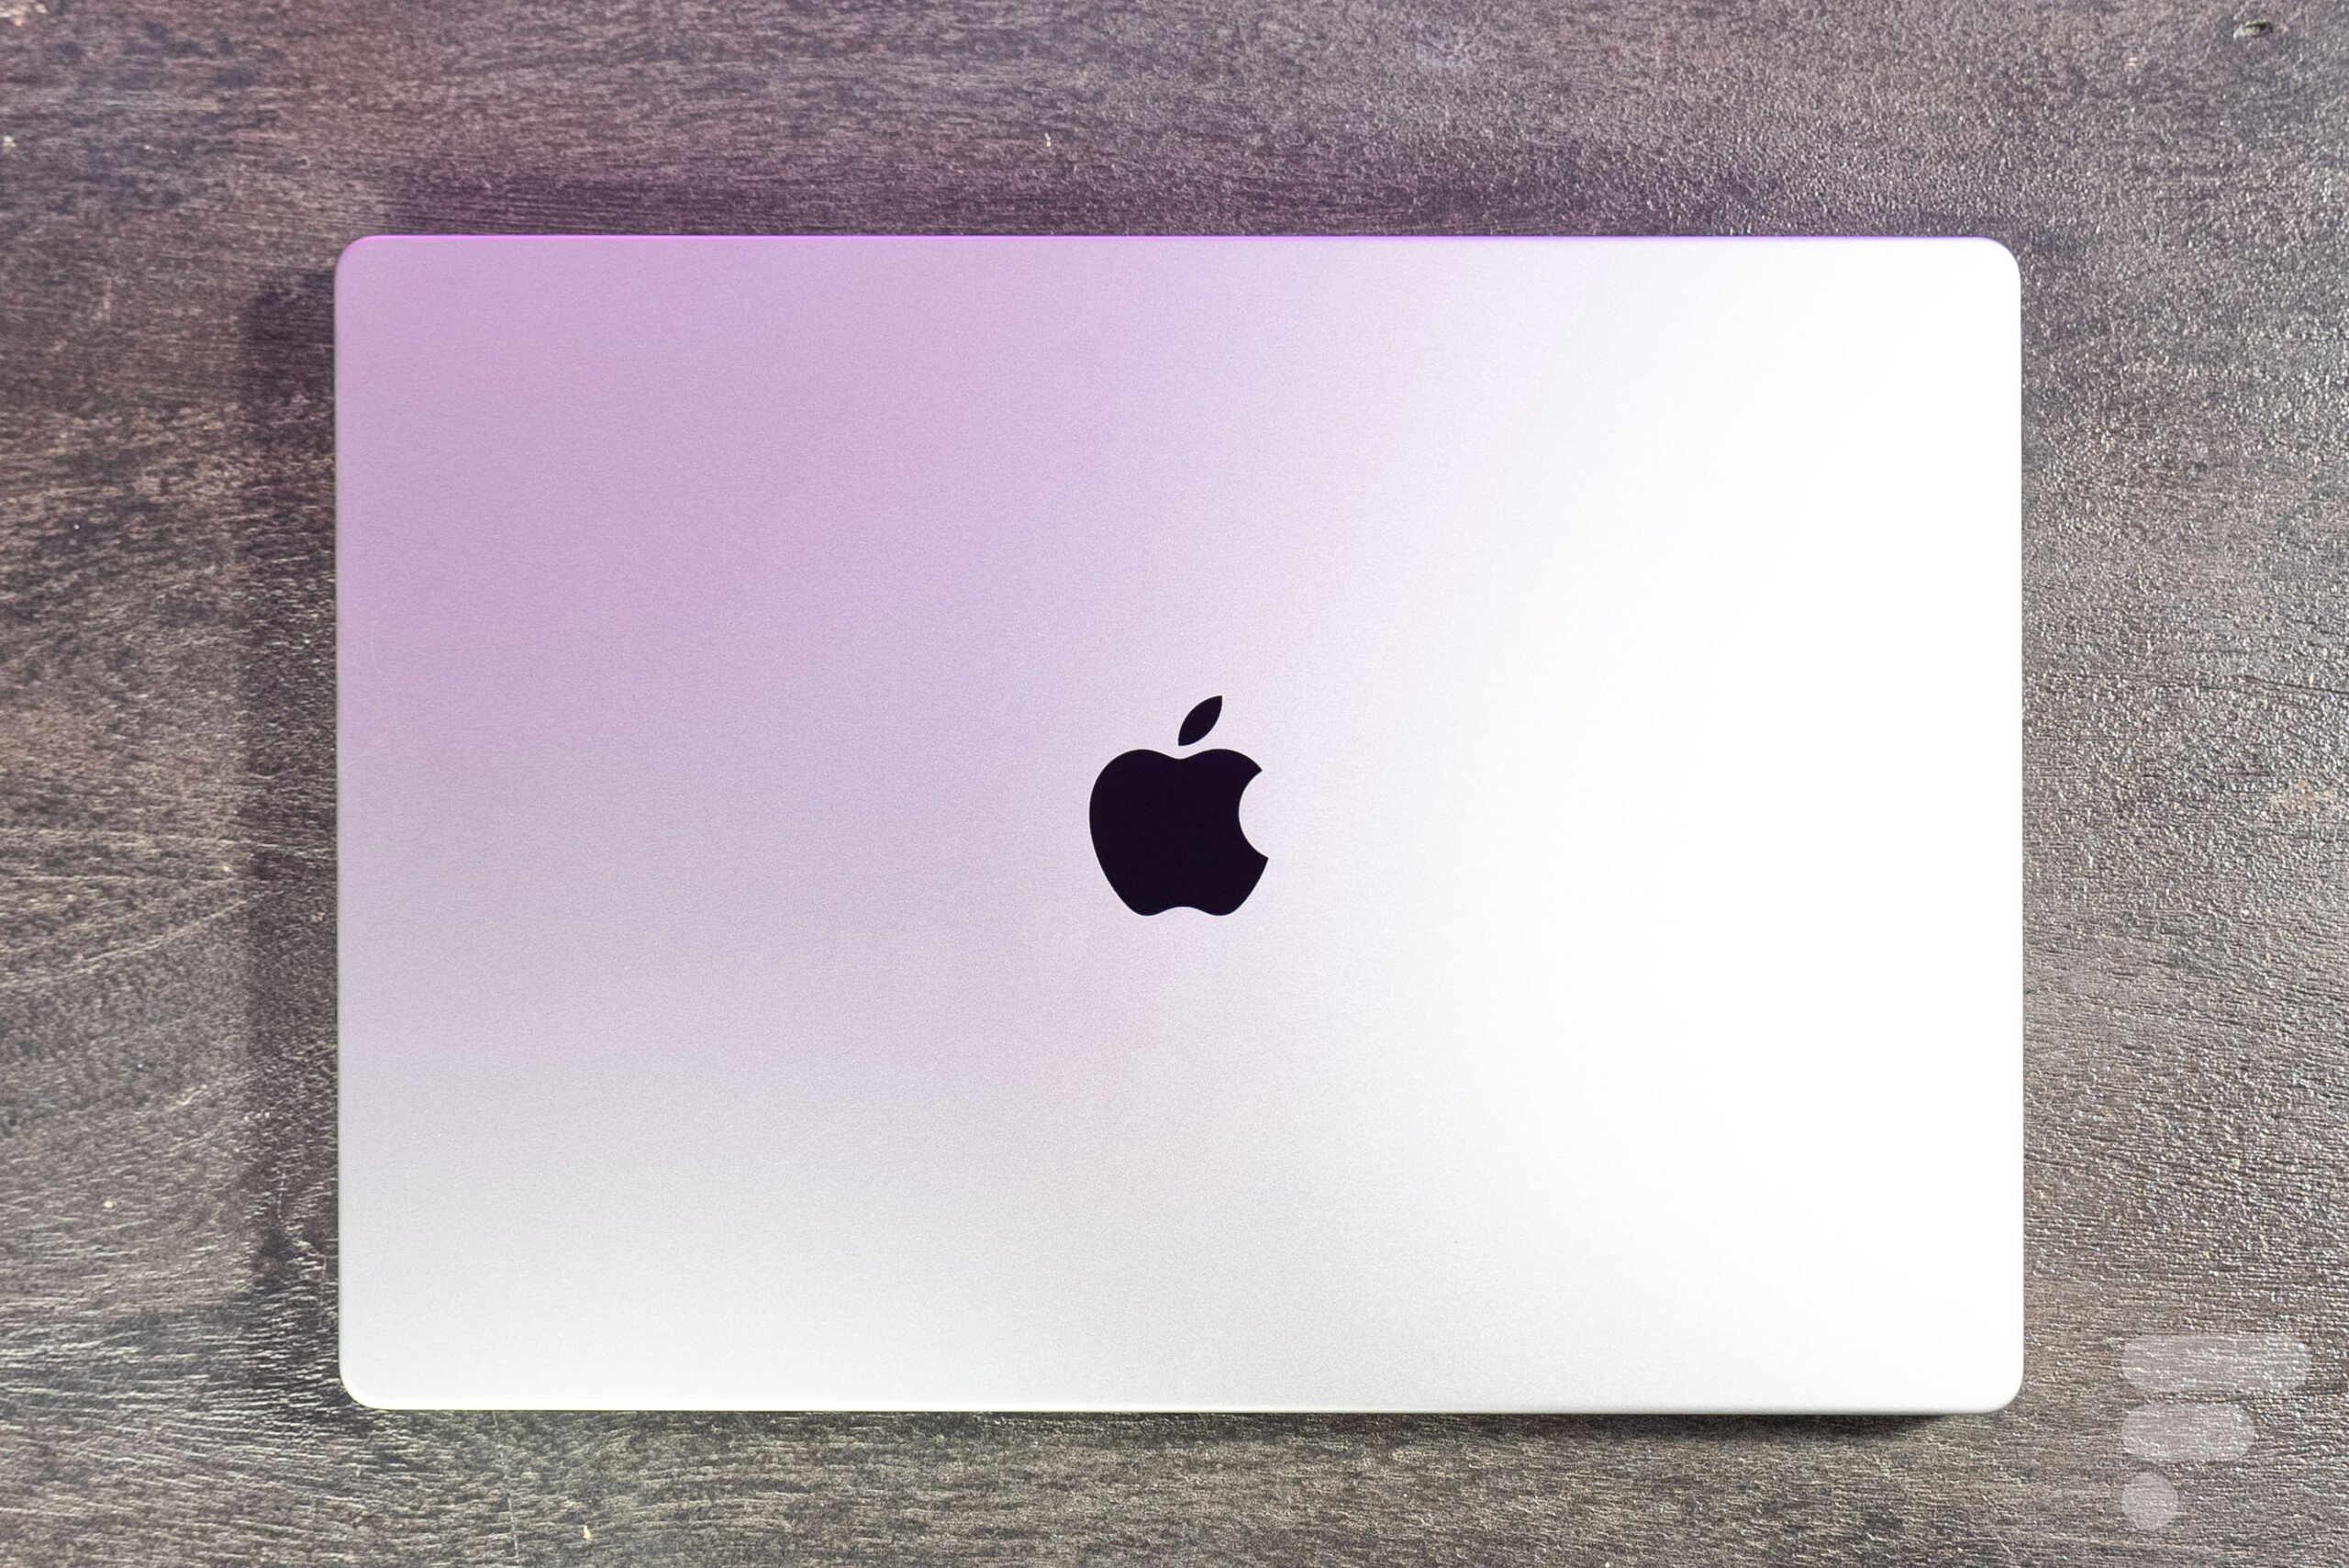 Soldes Apple : le MacBook Pro fracasse enfin son prix de plus de 100 euros  sur ce site sous-estimé